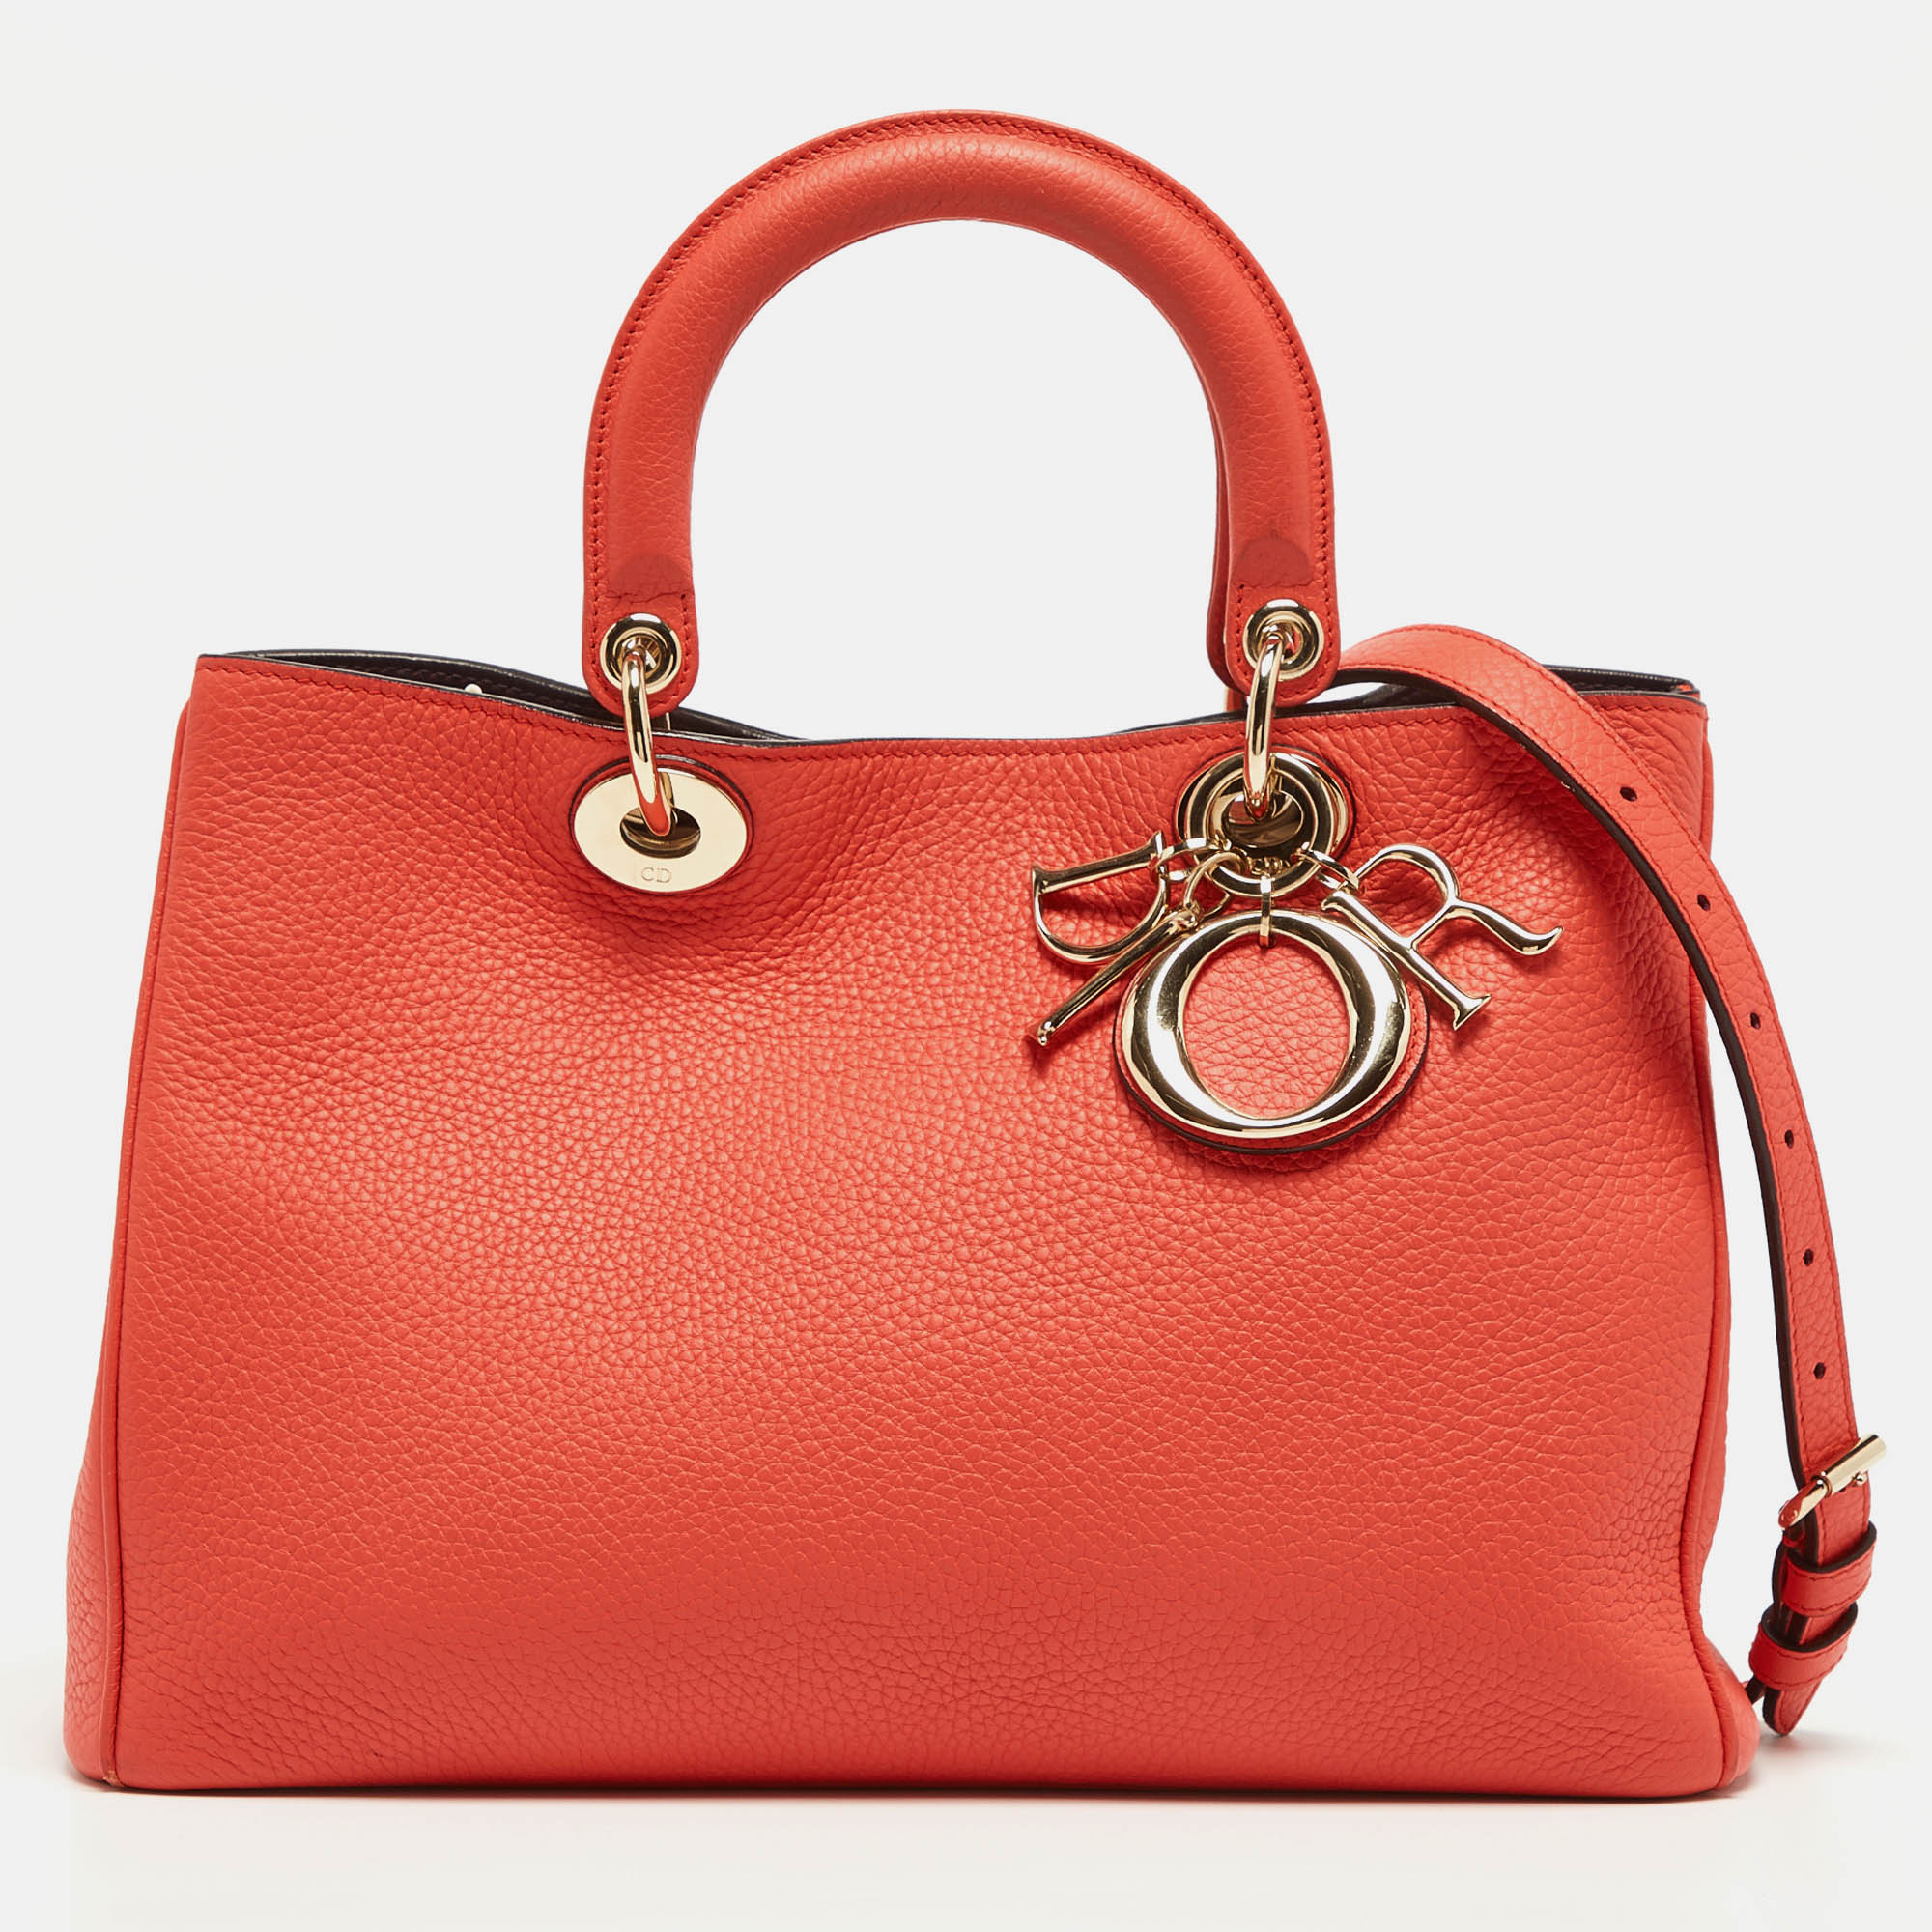 Dior coral leather medium diorissimo shopper tote